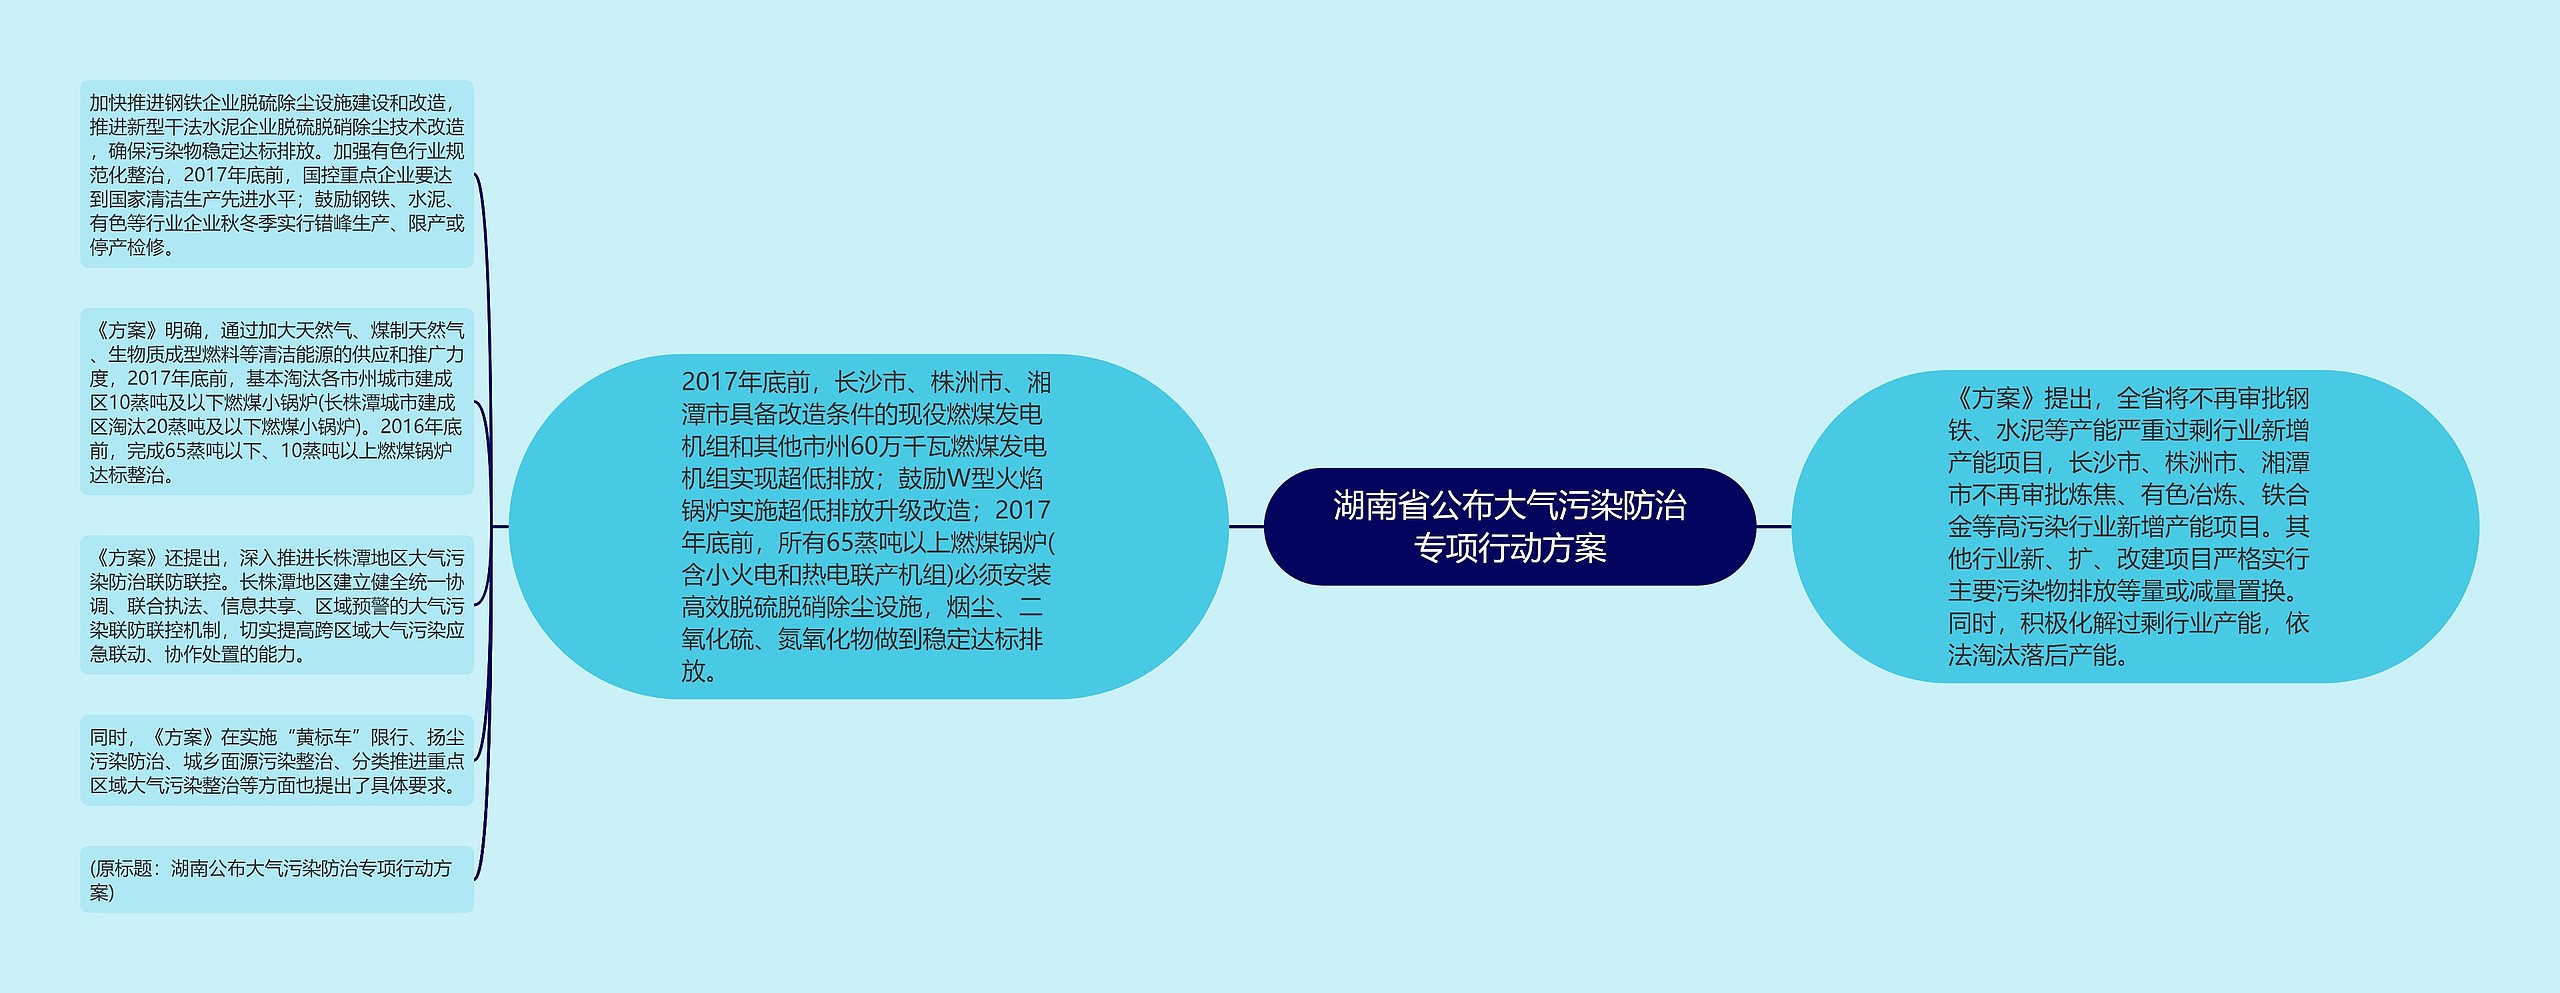 湖南省公布大气污染防治专项行动方案